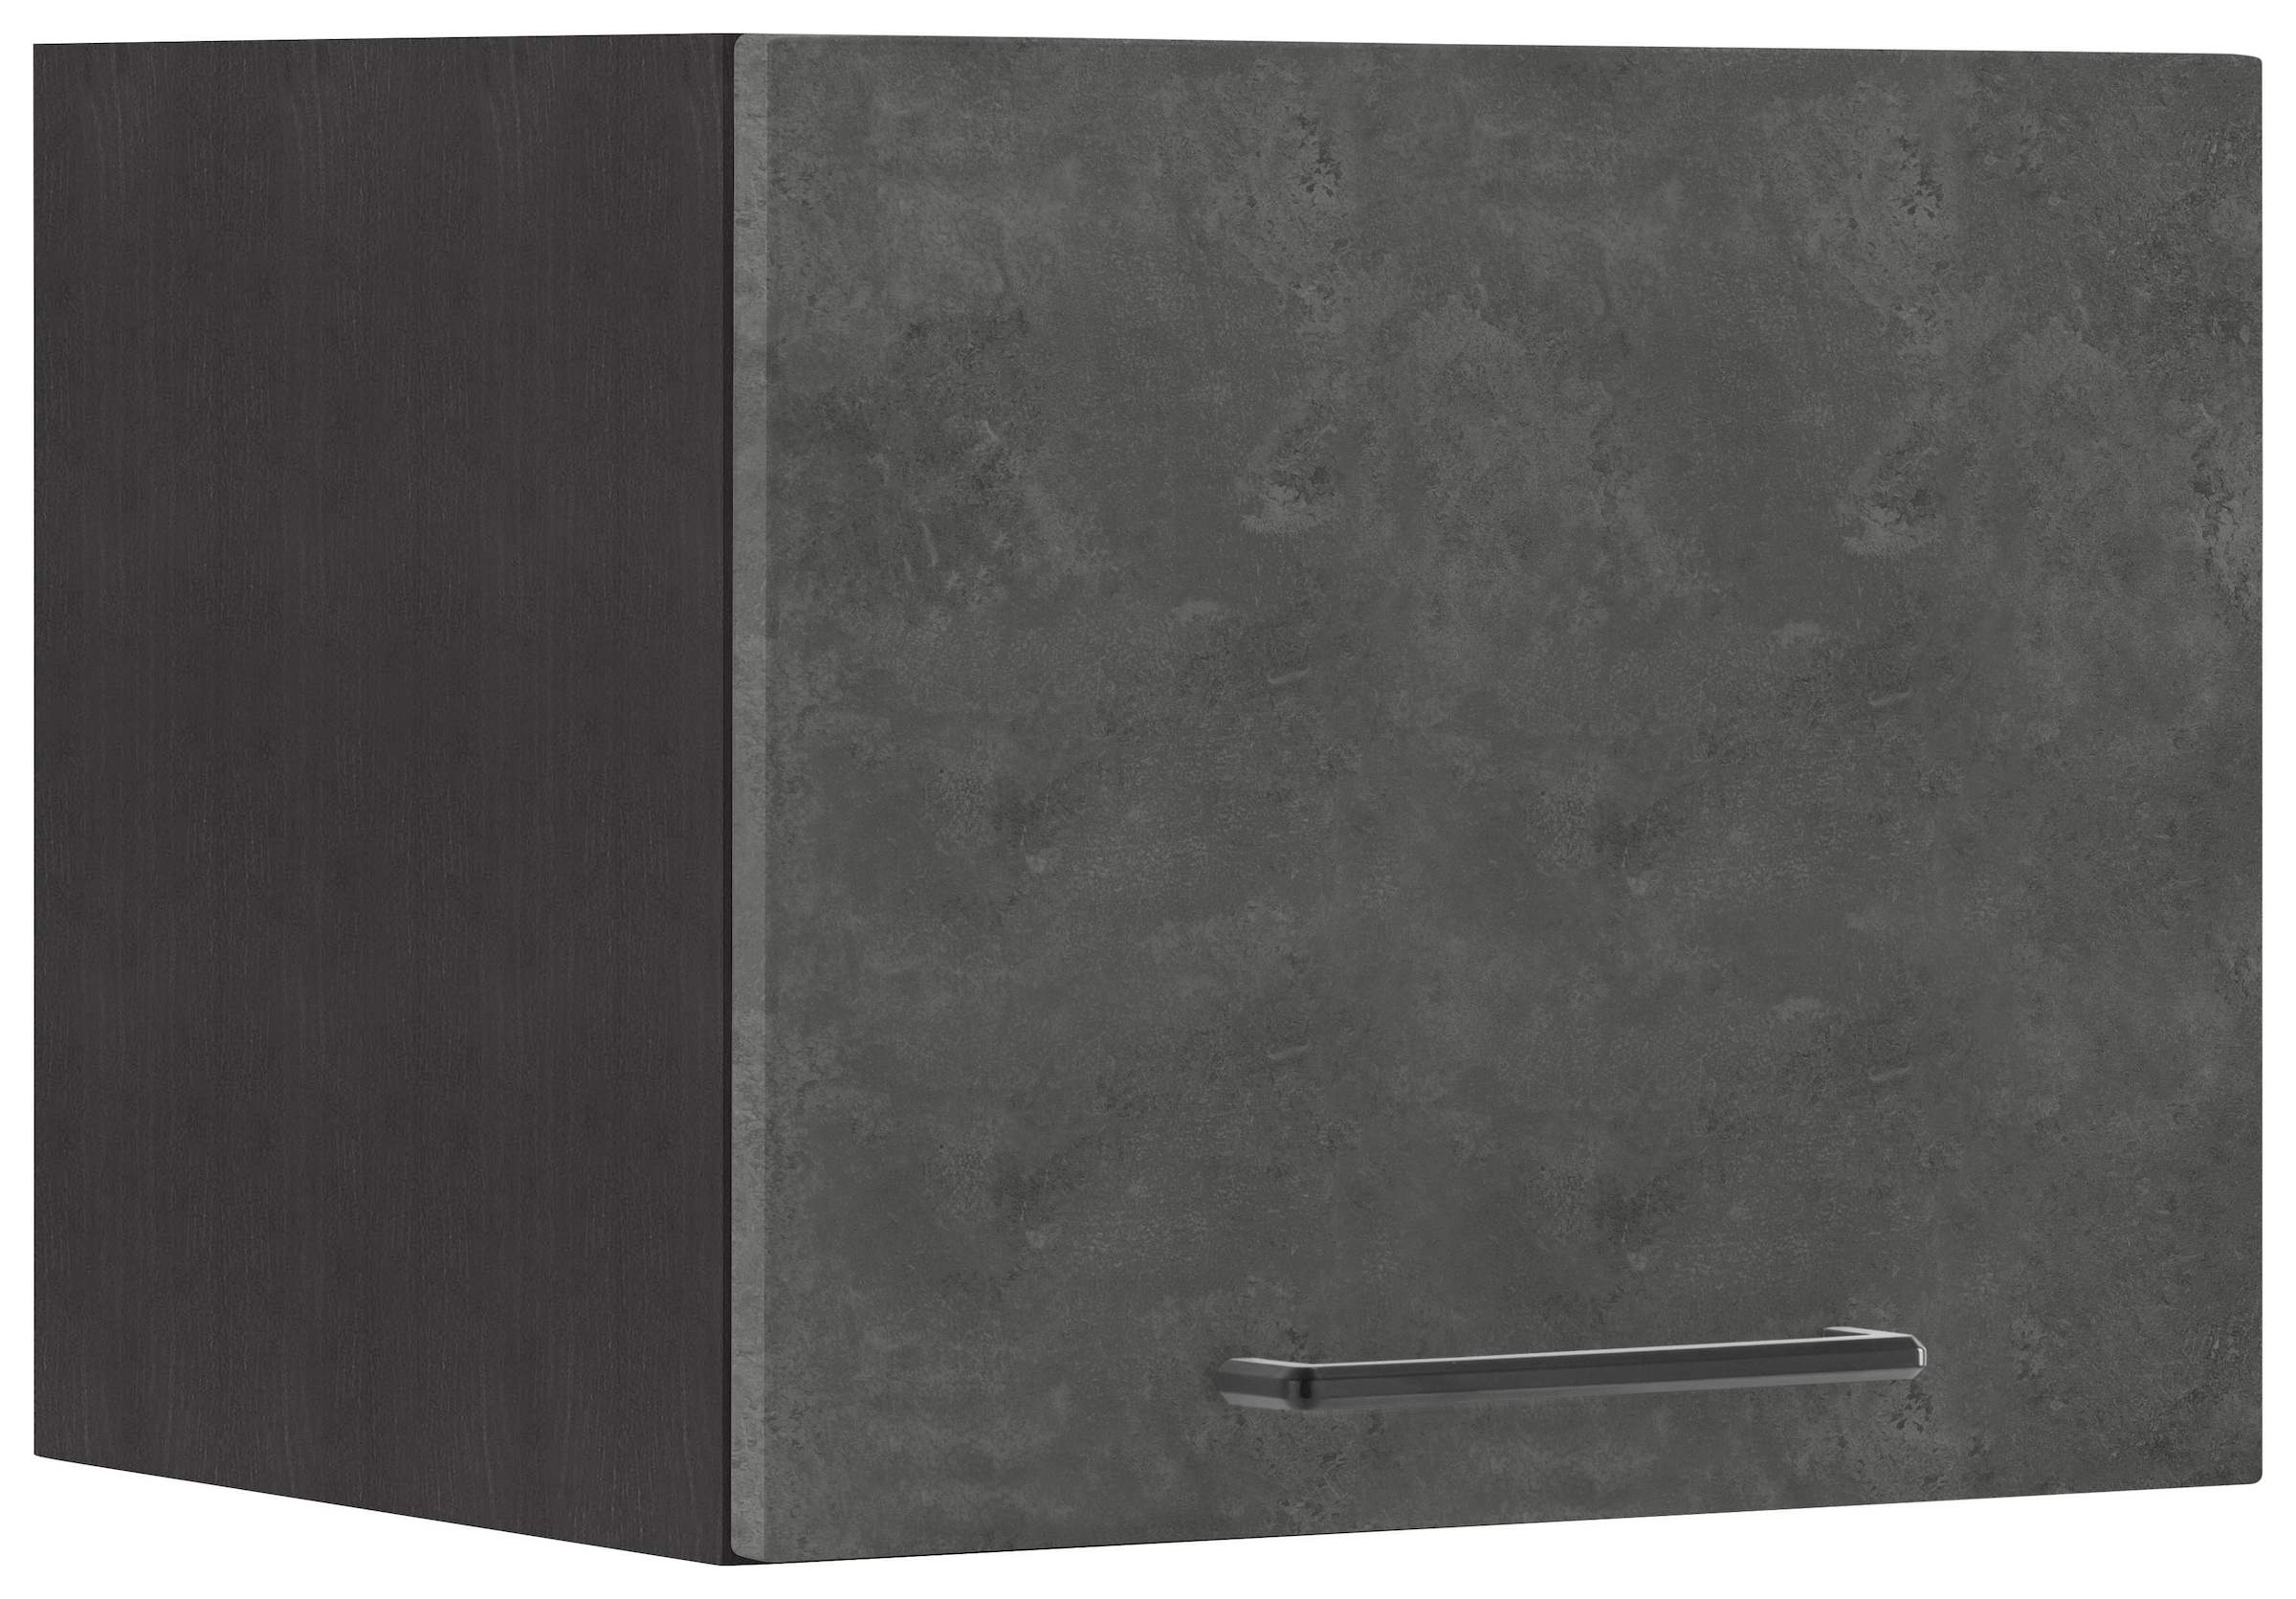 HELD MÖBEL Klapphängeschrank »Tulsa«, 40 cm breit, mit 1 Klappe, schwarzer Metallgriff, MDF Front